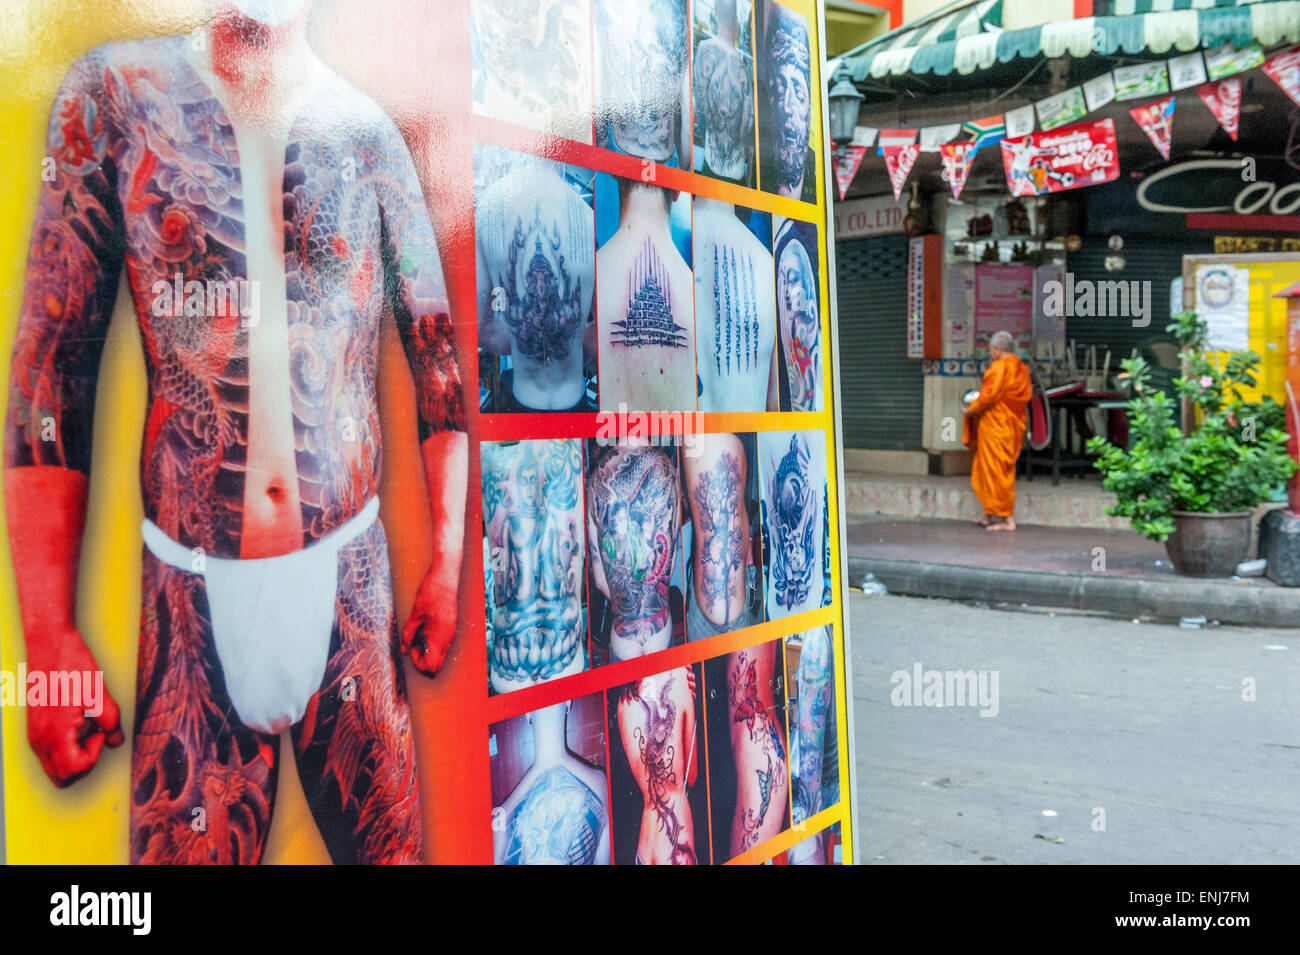 Le moine bouddhiste sur son matin alms série passant d'un grand écran pour un studio de tatouage. Bangkok. Thaïlande Banque D'Images